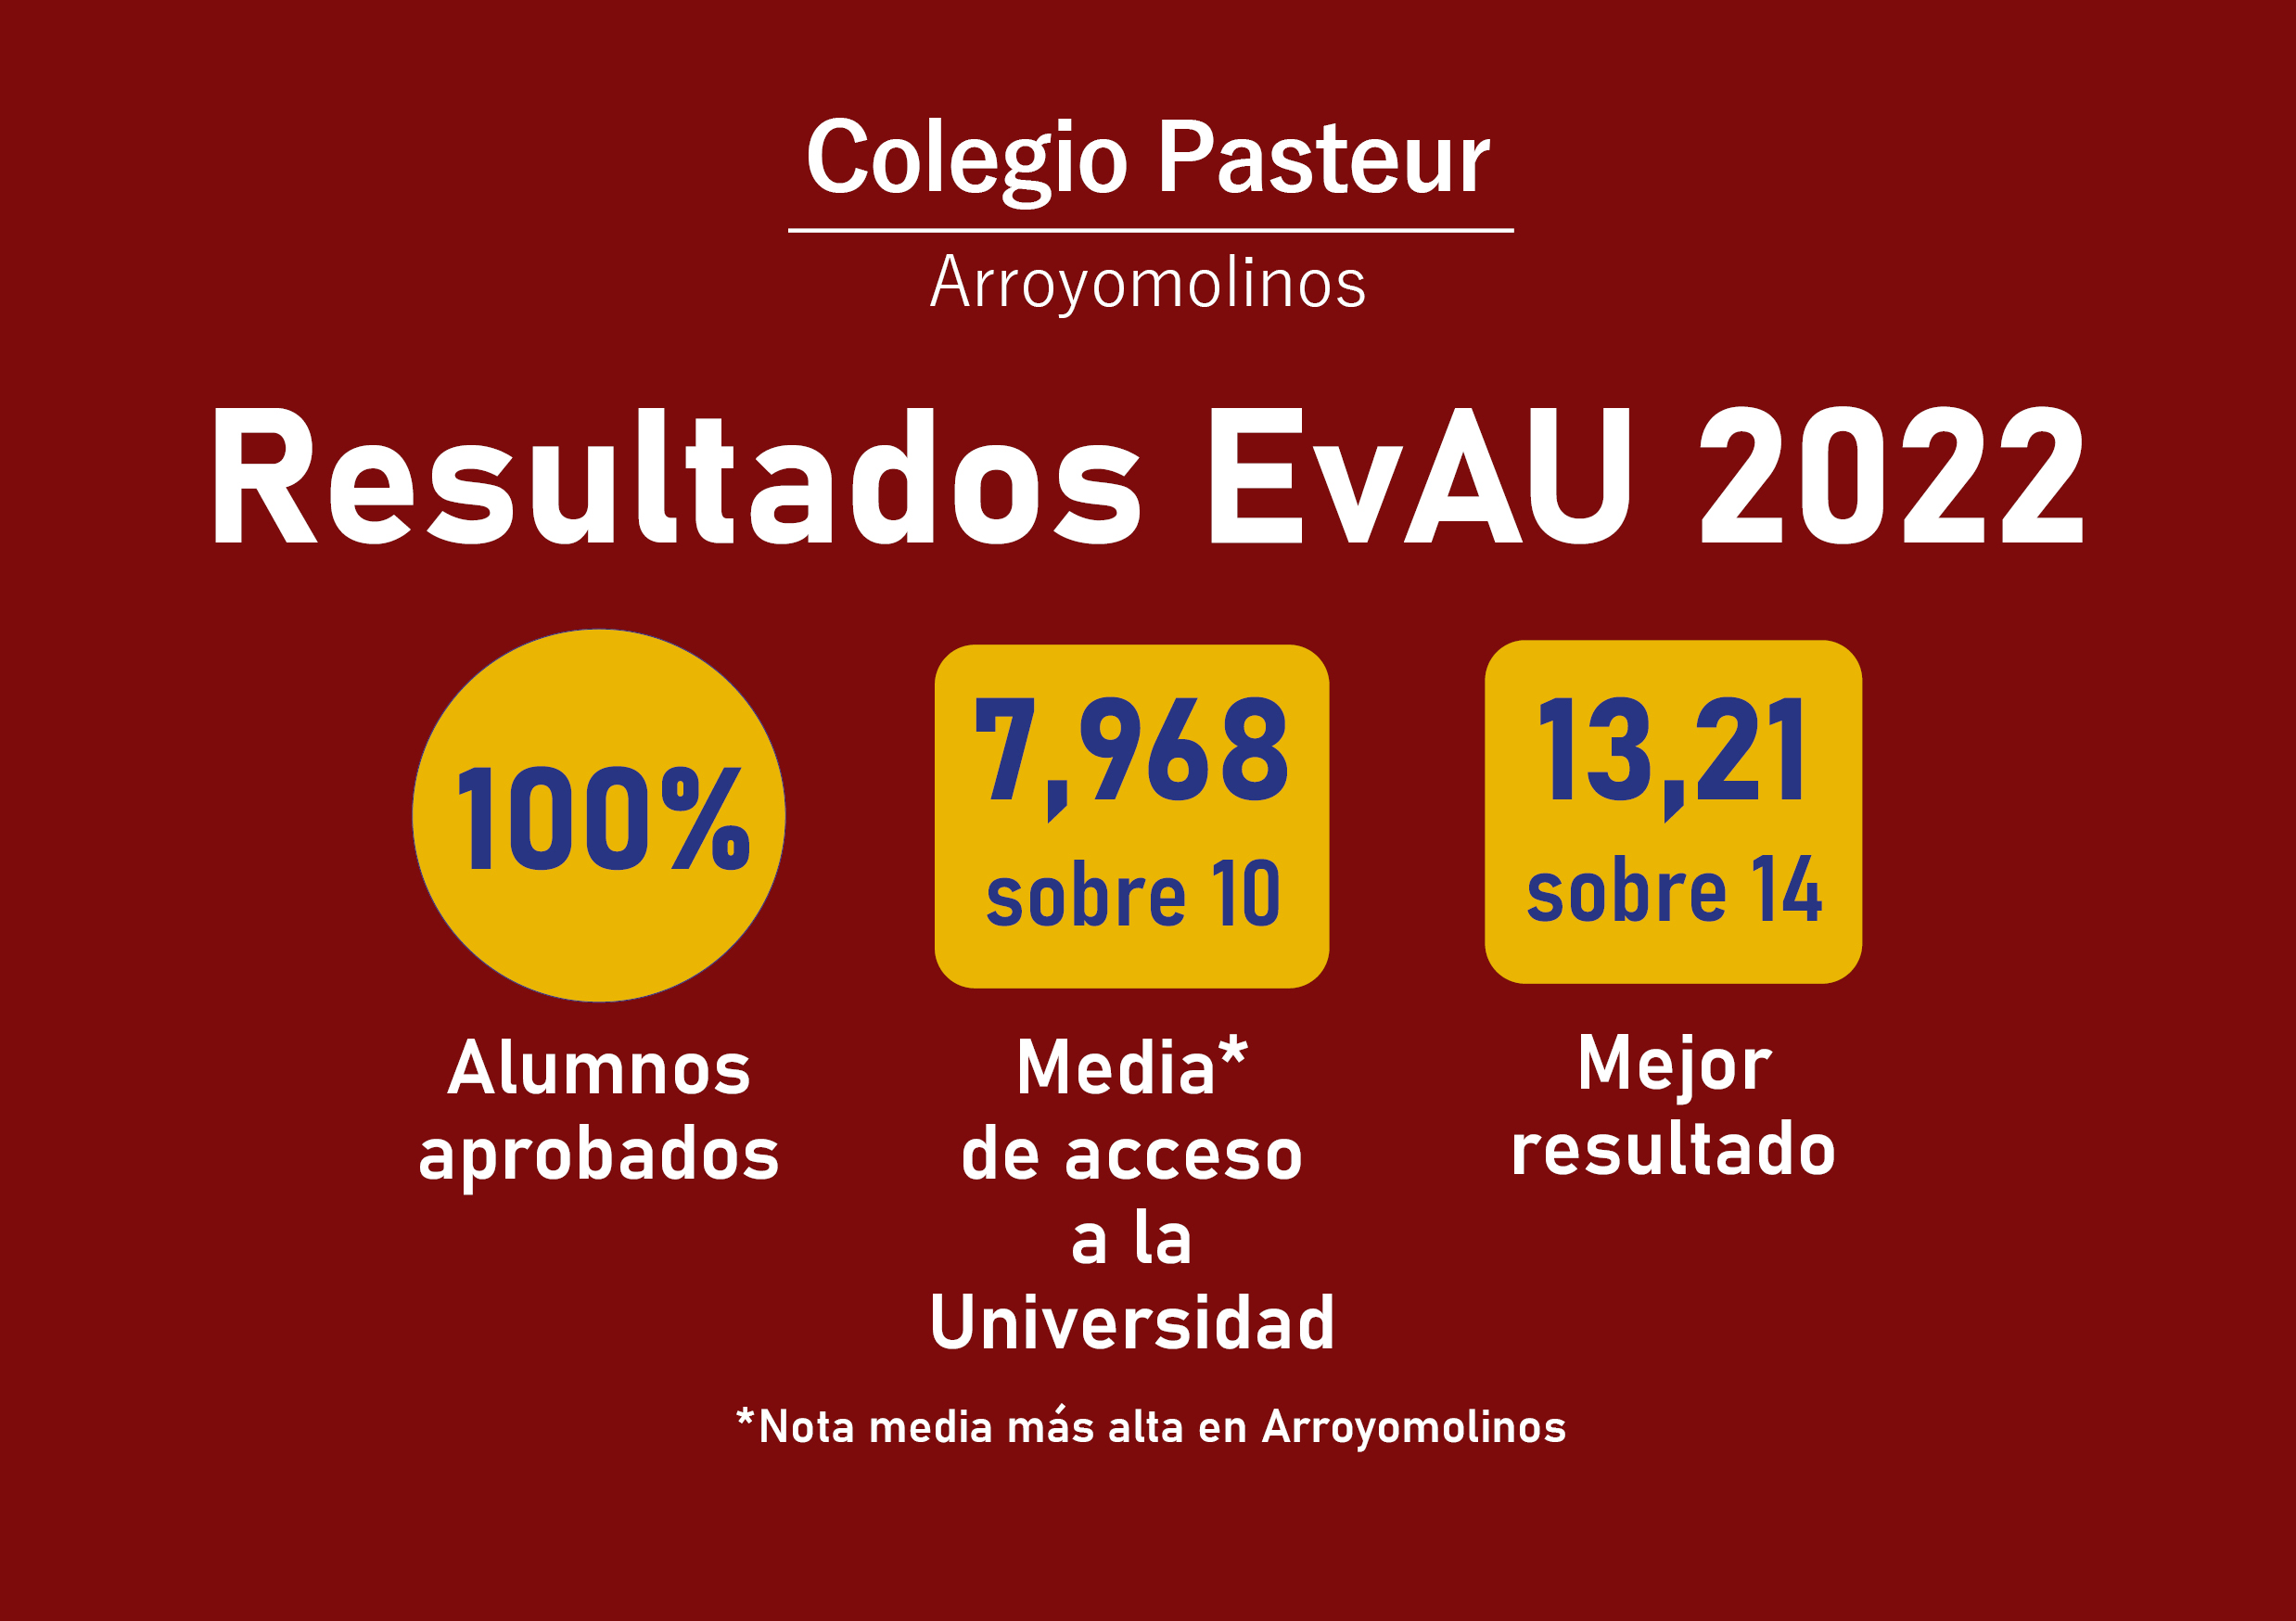 Resultados EvAU 2022 para la web